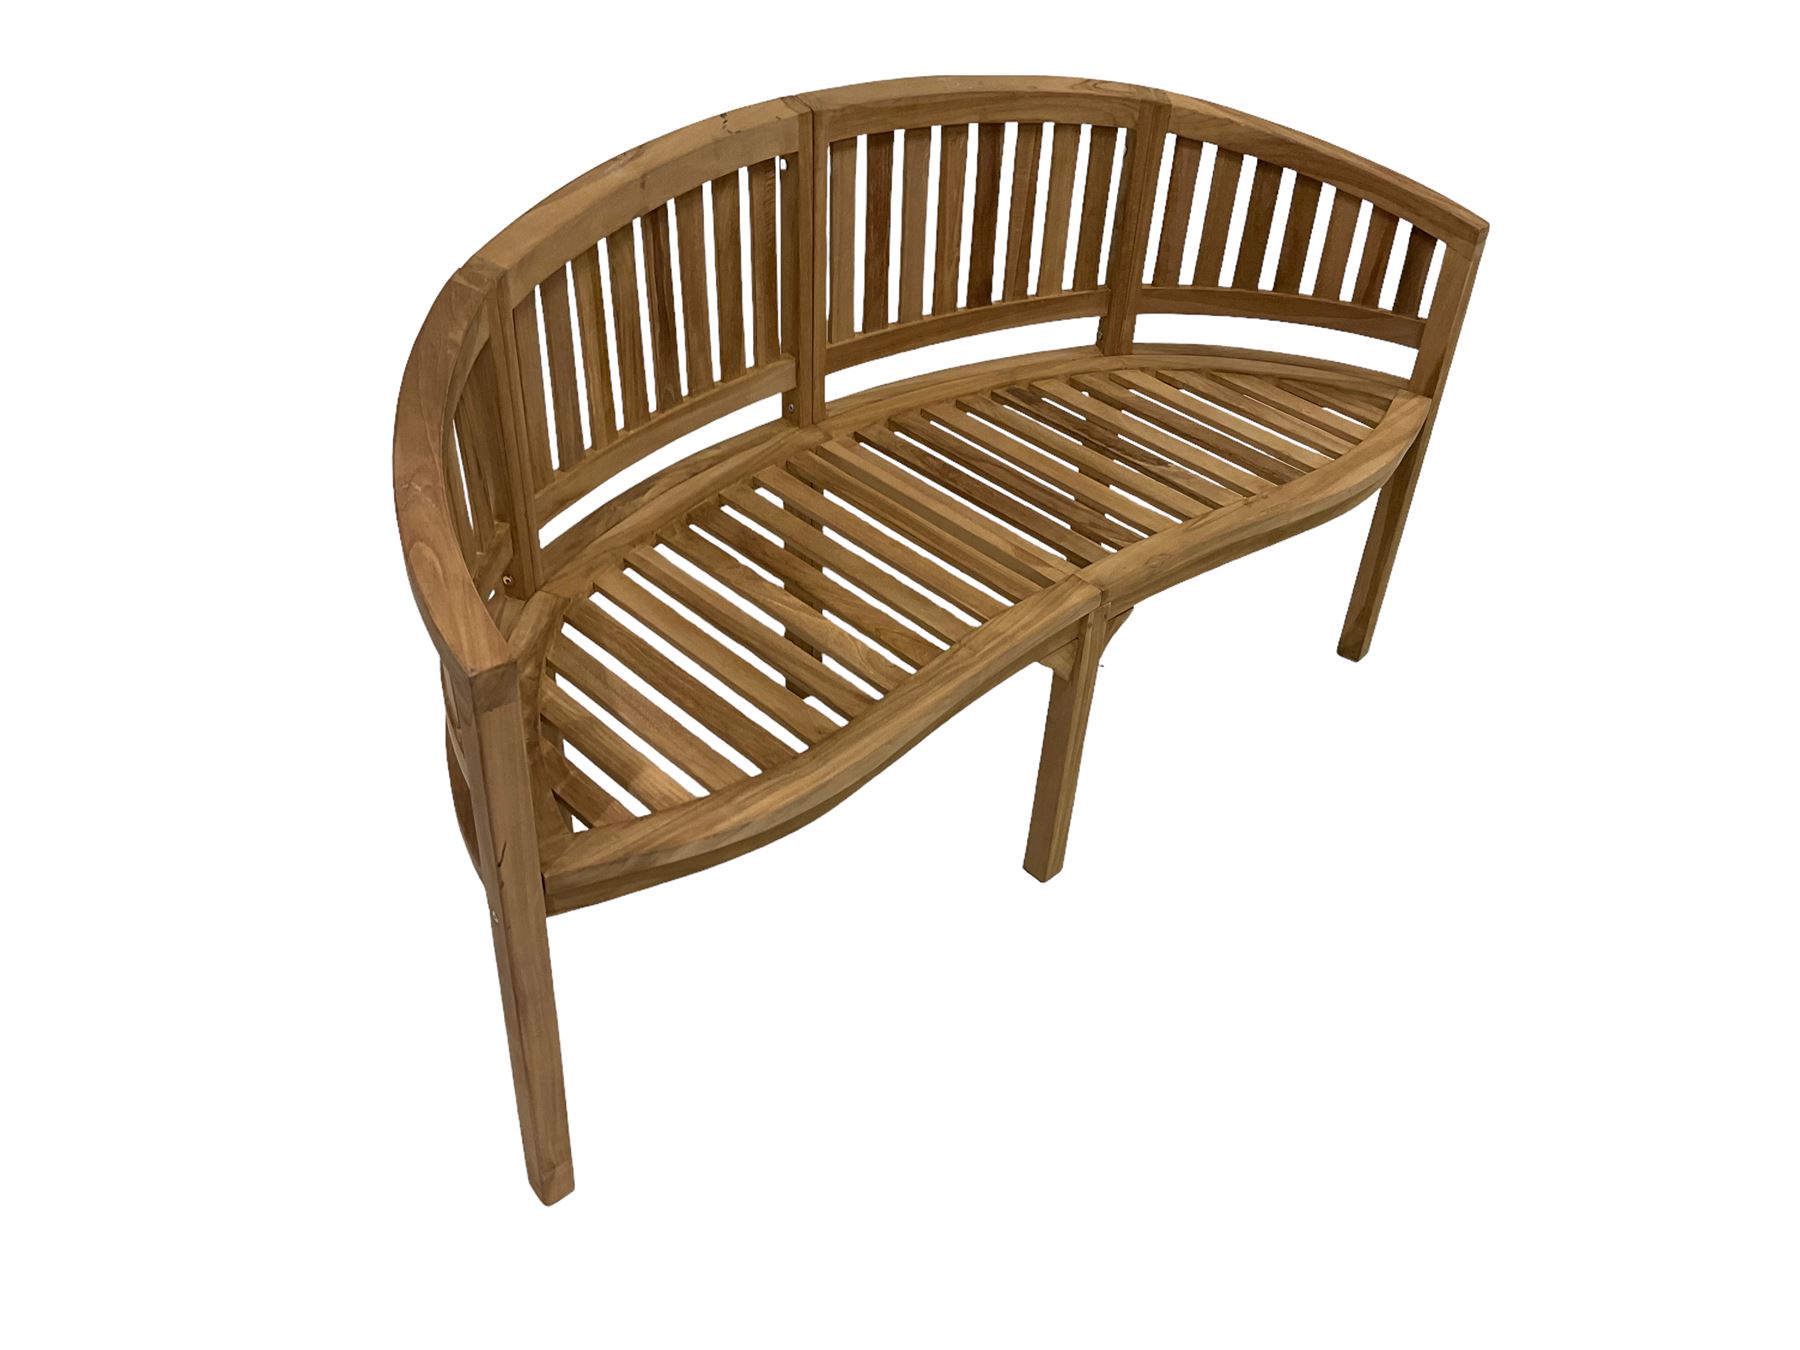 Solid teak garden bench - Image 3 of 4